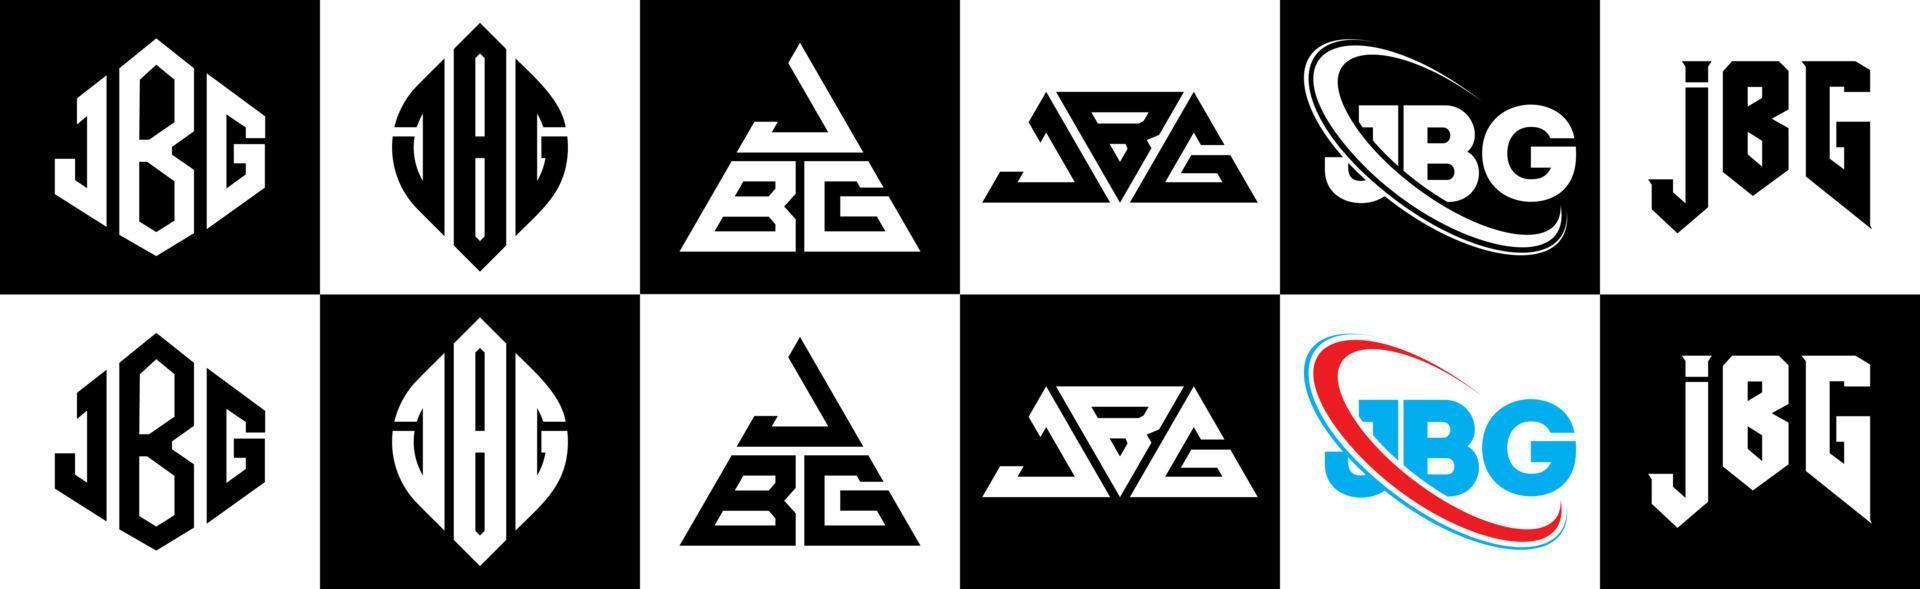 jbg-Buchstaben-Logo-Design in sechs Stilen. jbg polygon, kreis, dreieck, hexagon, flacher und einfacher stil mit schwarz-weißem buchstabenlogo in einer zeichenfläche. JBG minimalistisches und klassisches Logo vektor